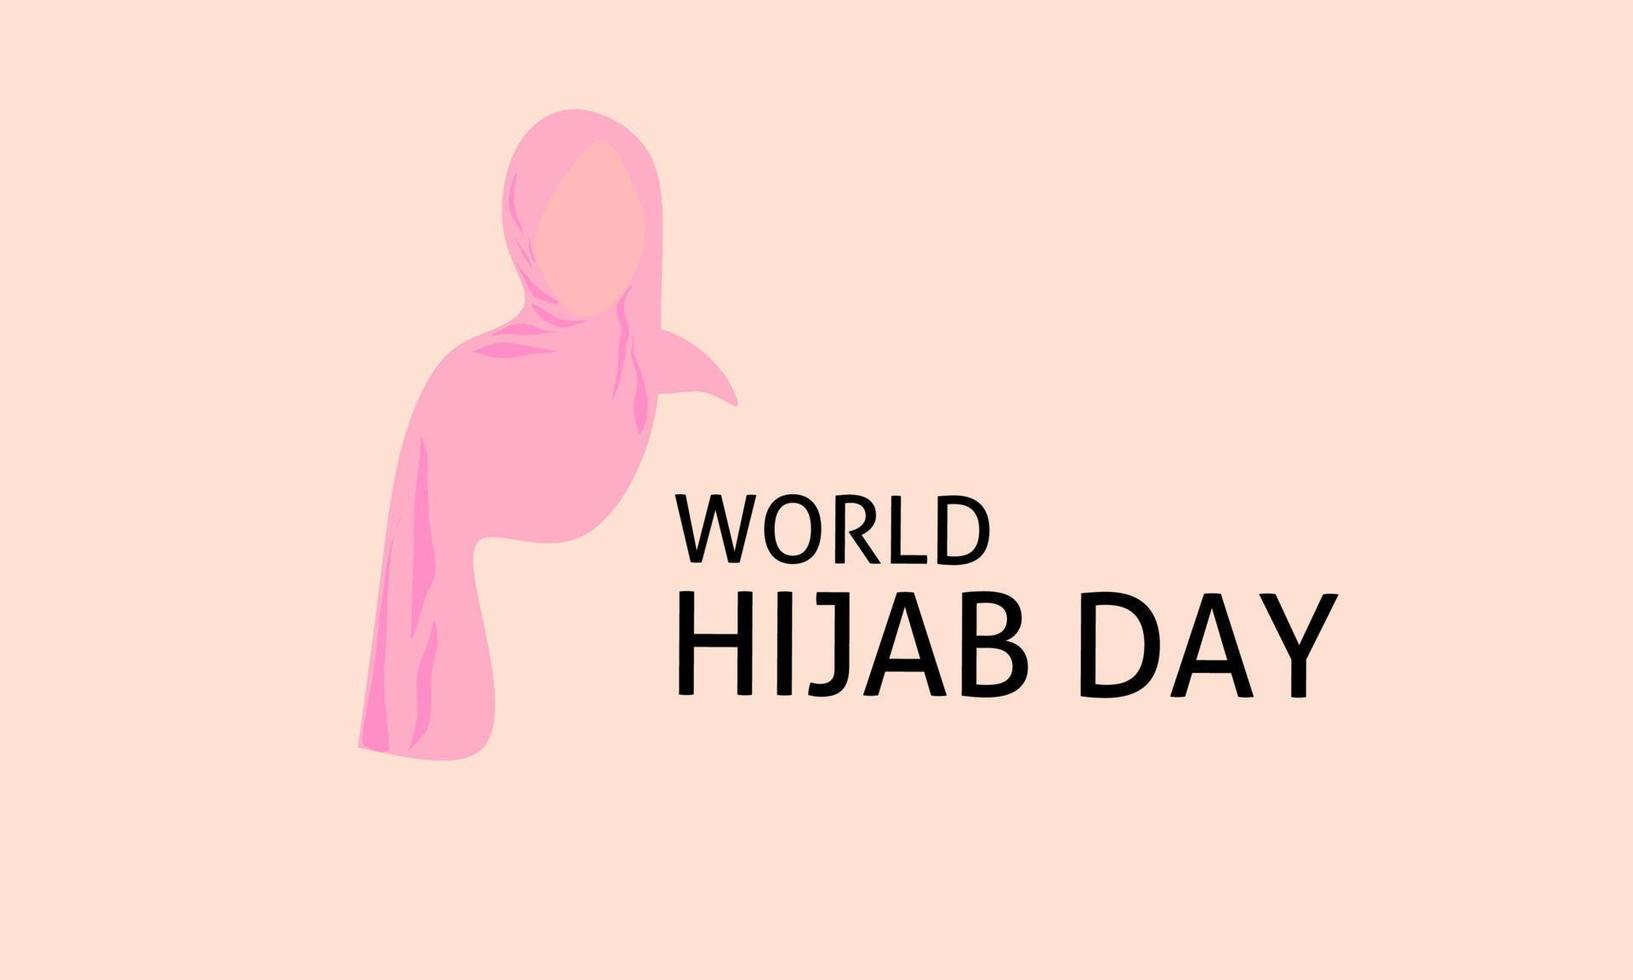 Vektorgrafik des Welt-Hijab-Tages zur Feier des Welt-Hijab-Tages. flaches Design. Flyer-Design. 01. Februar. vektor